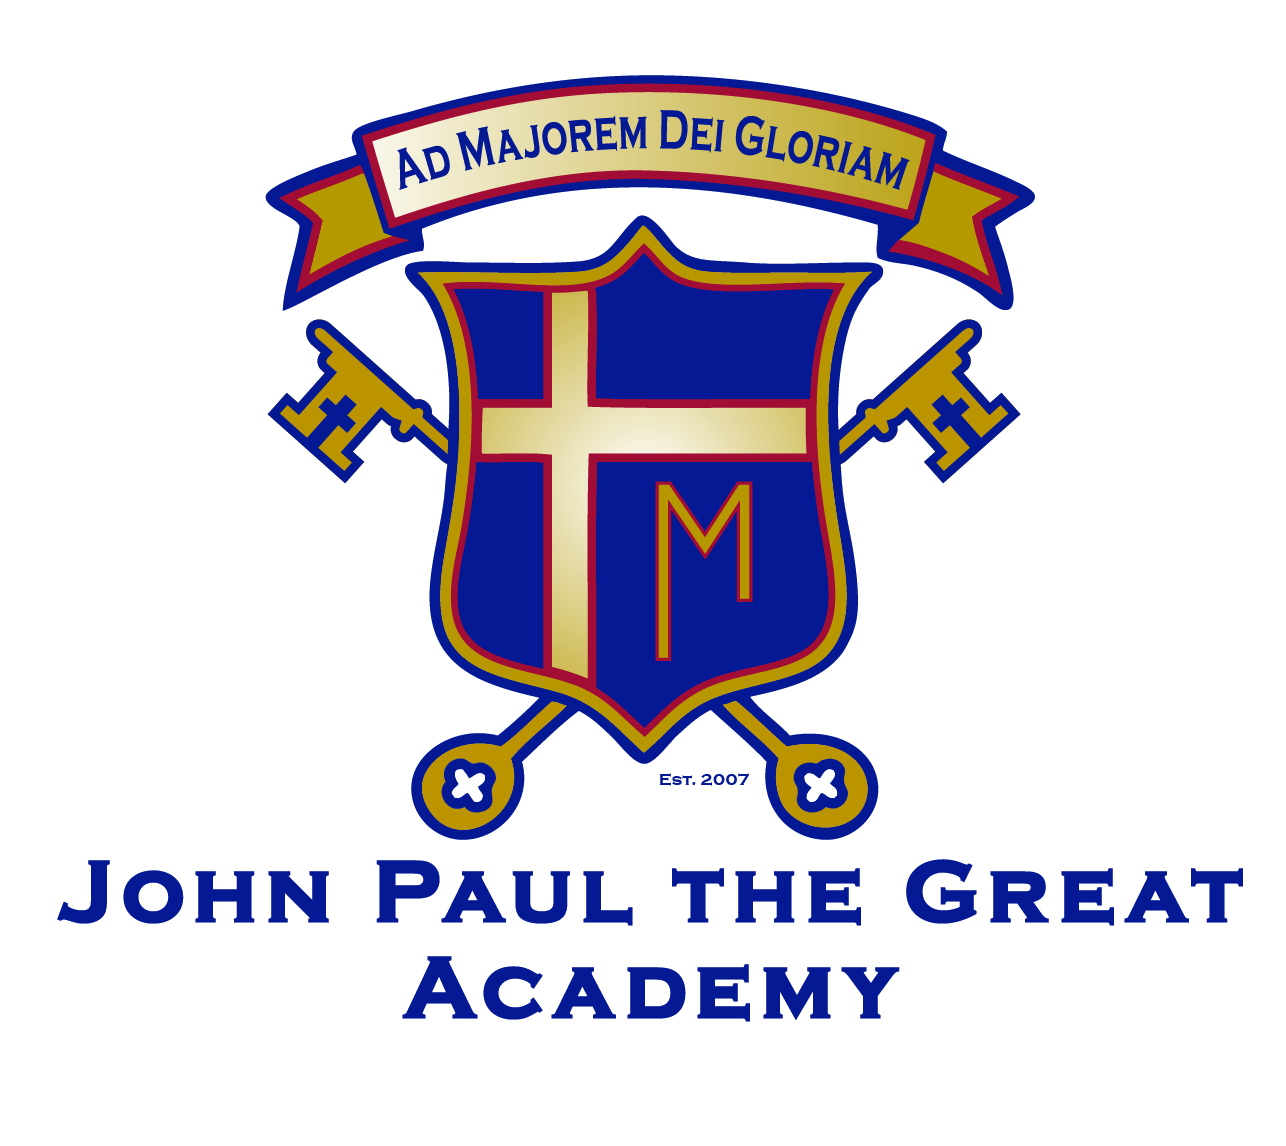 John Paul the Great Academy